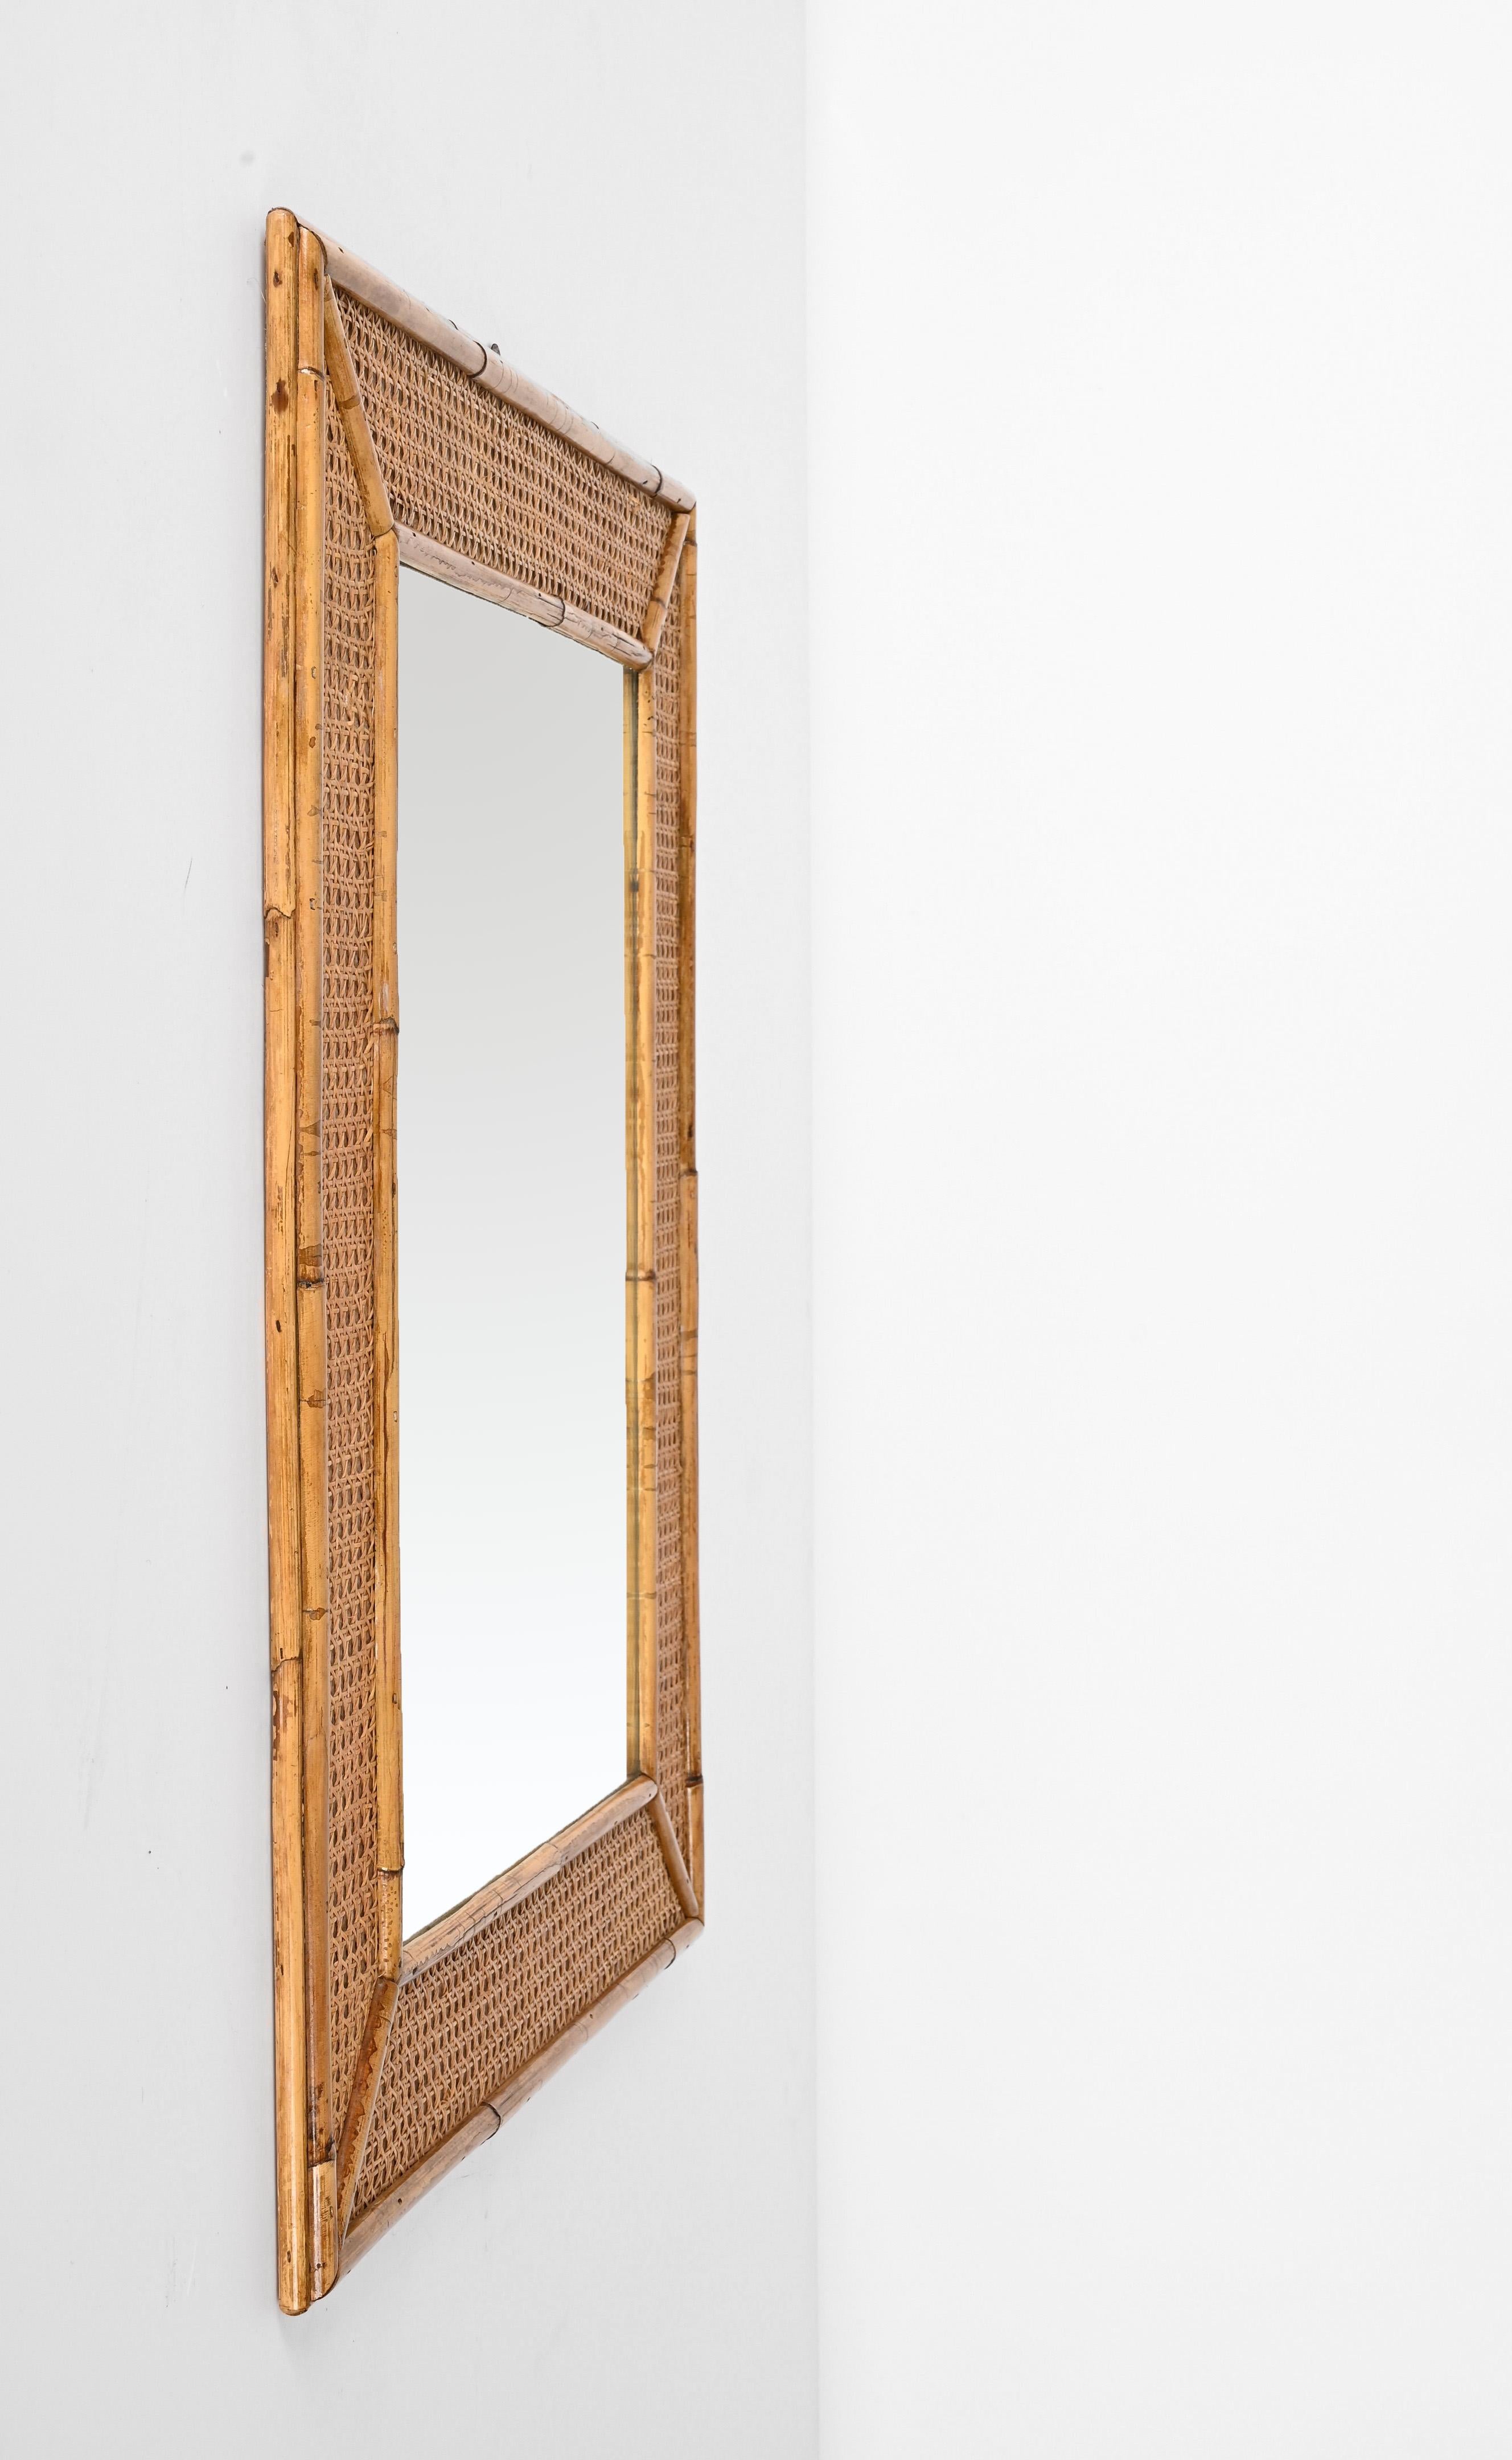 Spectaculaire miroir rectangulaire du milieu du siècle avec cadre en bambou et paille de Vienne. Cette pièce étonnante a été produite en Italie dans les années 1970.

Cette pièce est magnifique en raison de son cadre, car elle présente un cadre